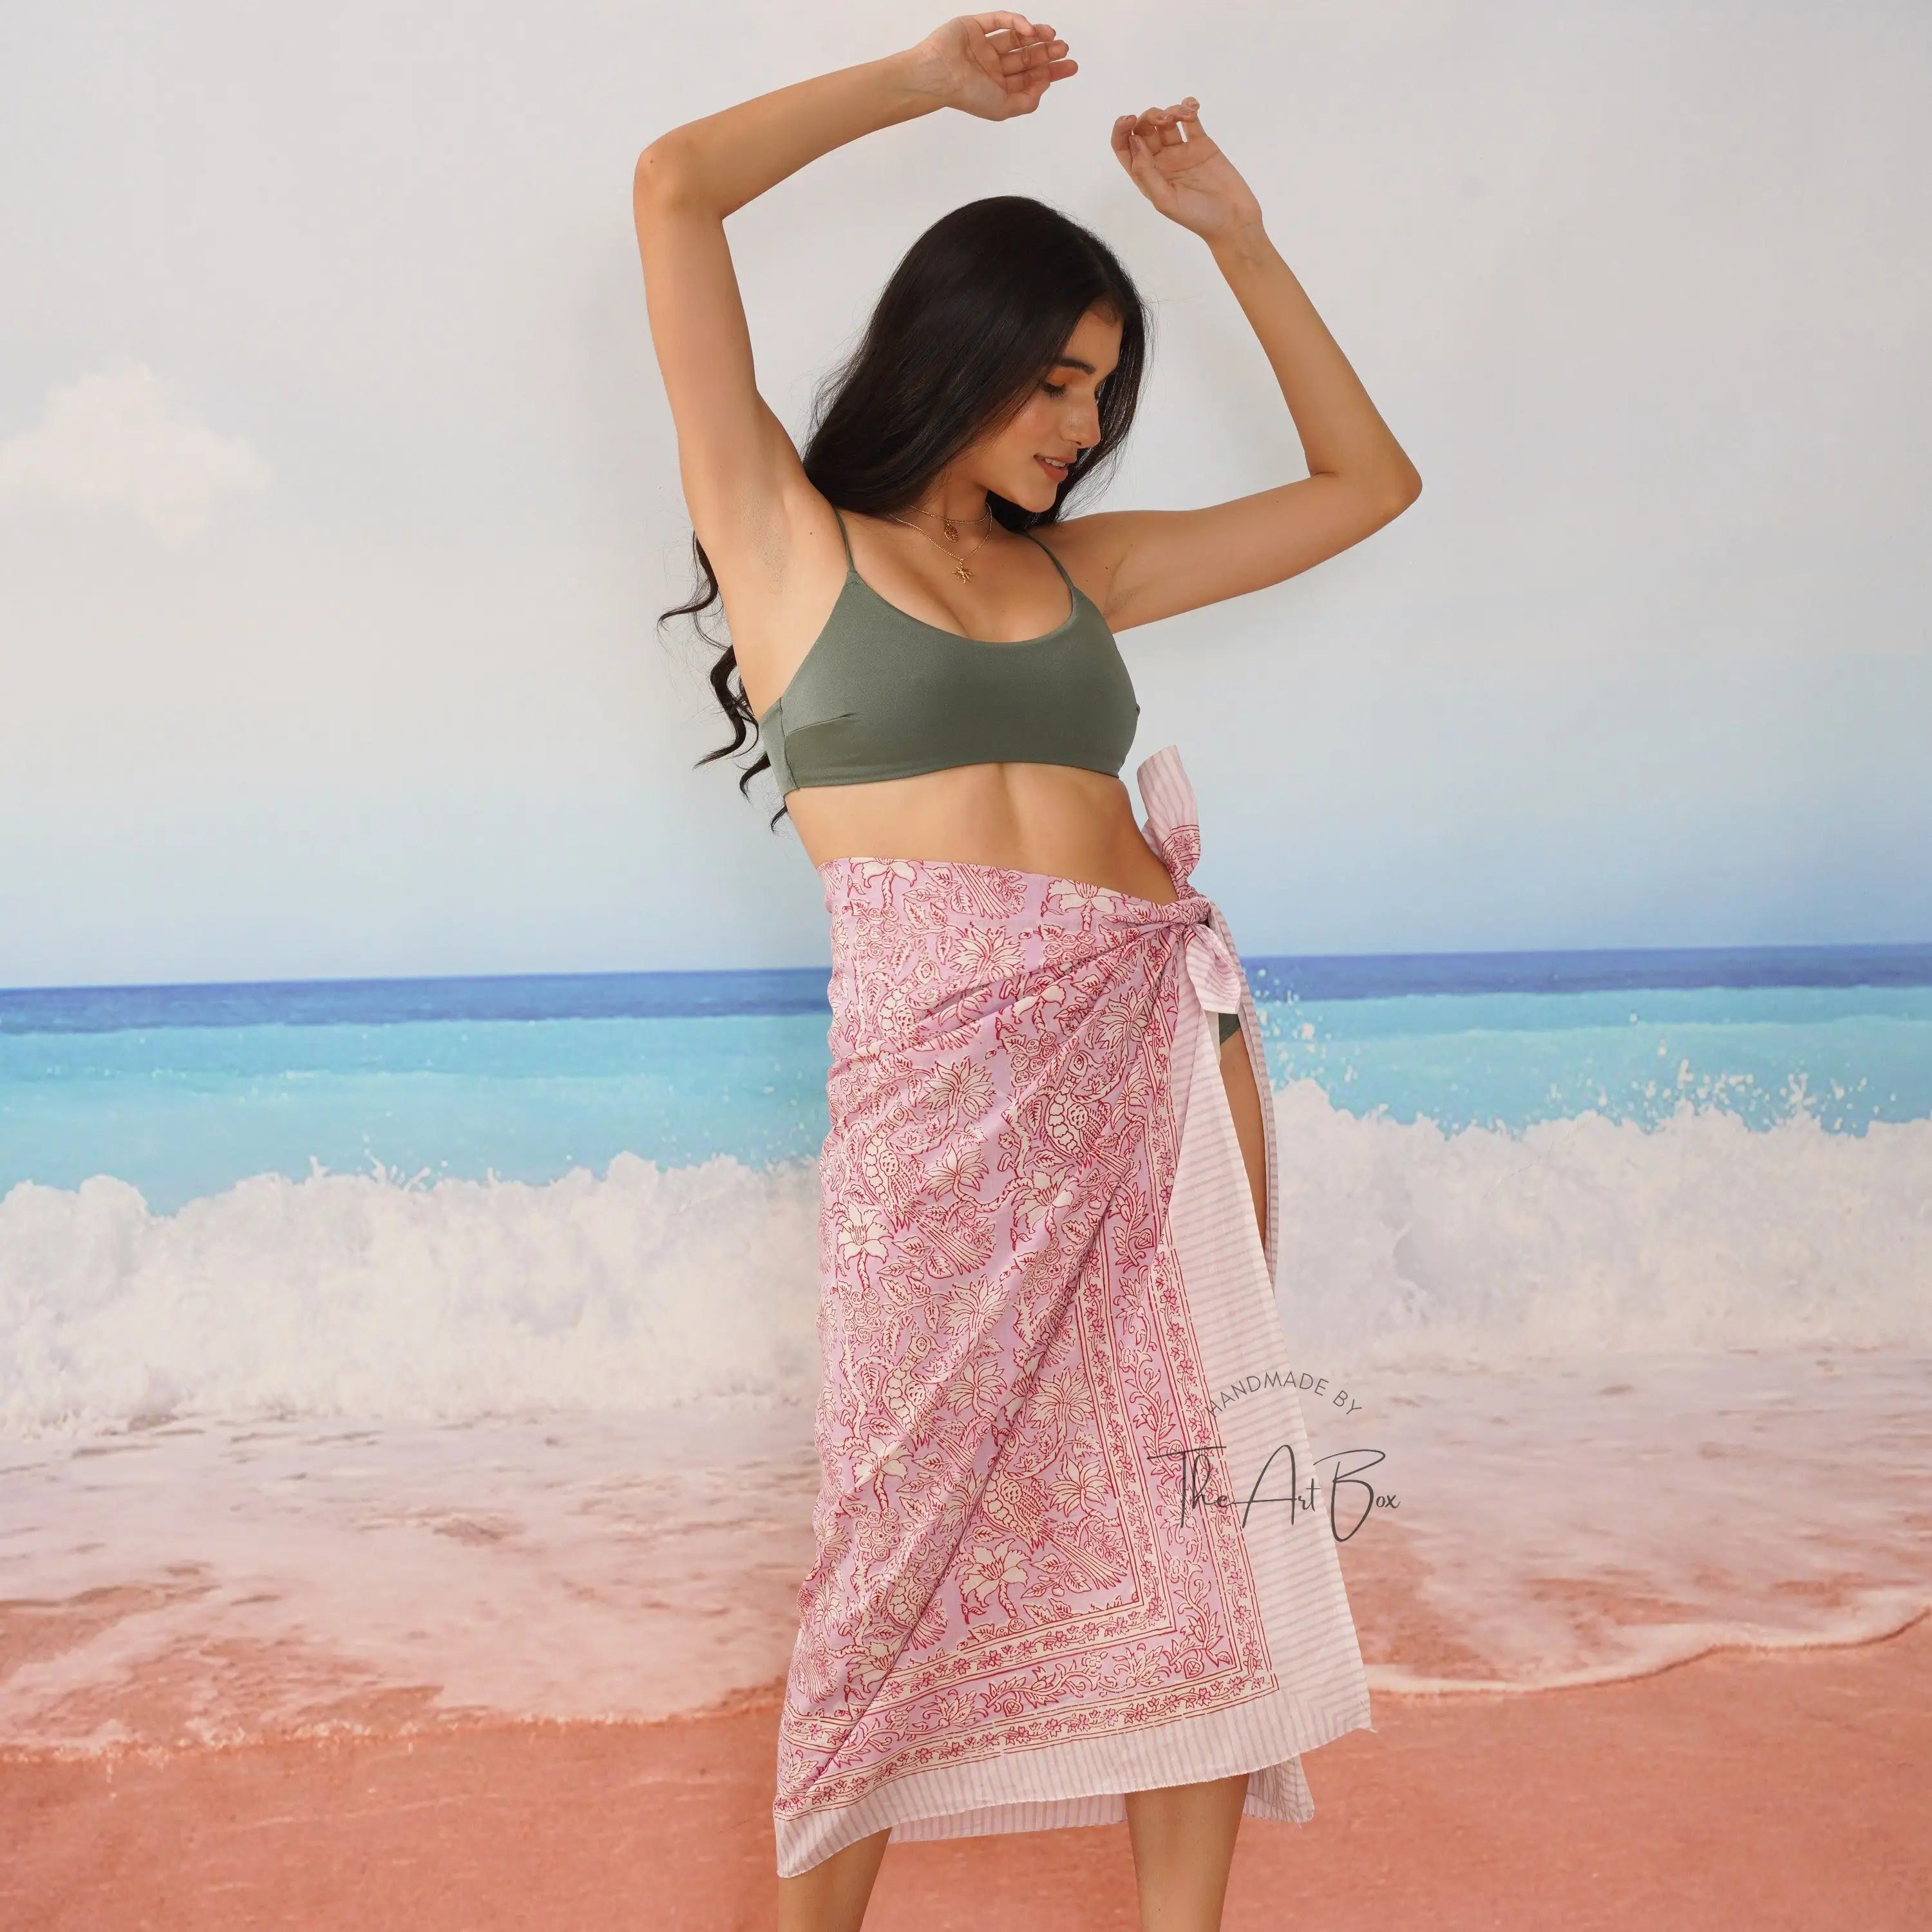 Mujeres Floral mano bloque impreso puro algodón ropa de playa Sarong Body Wrap Bikini cubrir bufanda grande